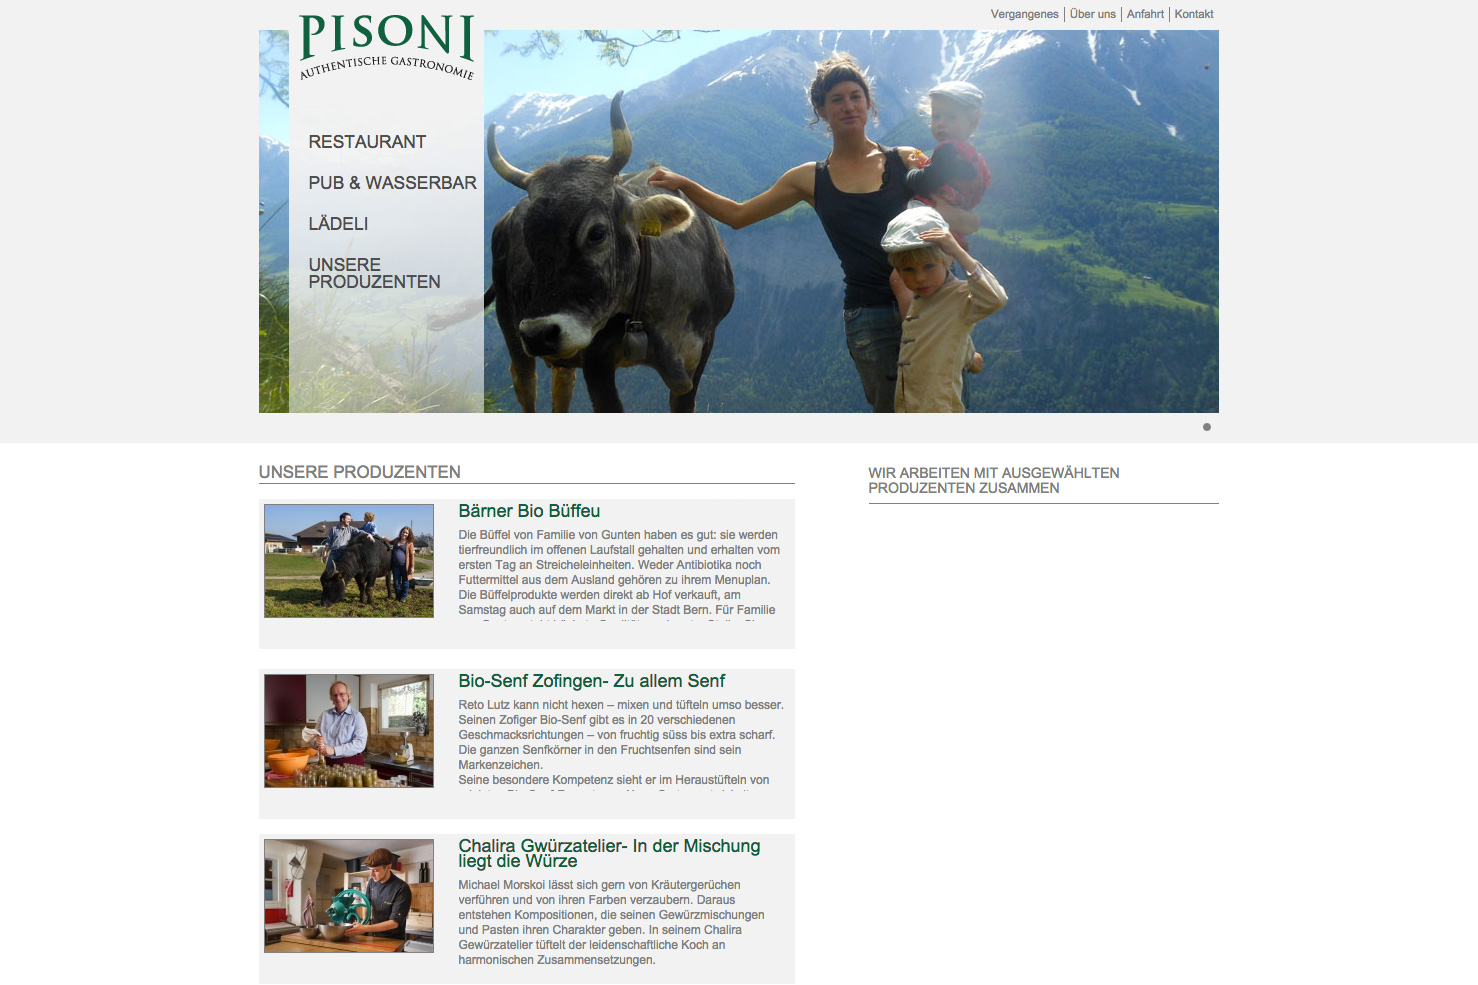 Bild 3 vom Pisoni Webseite